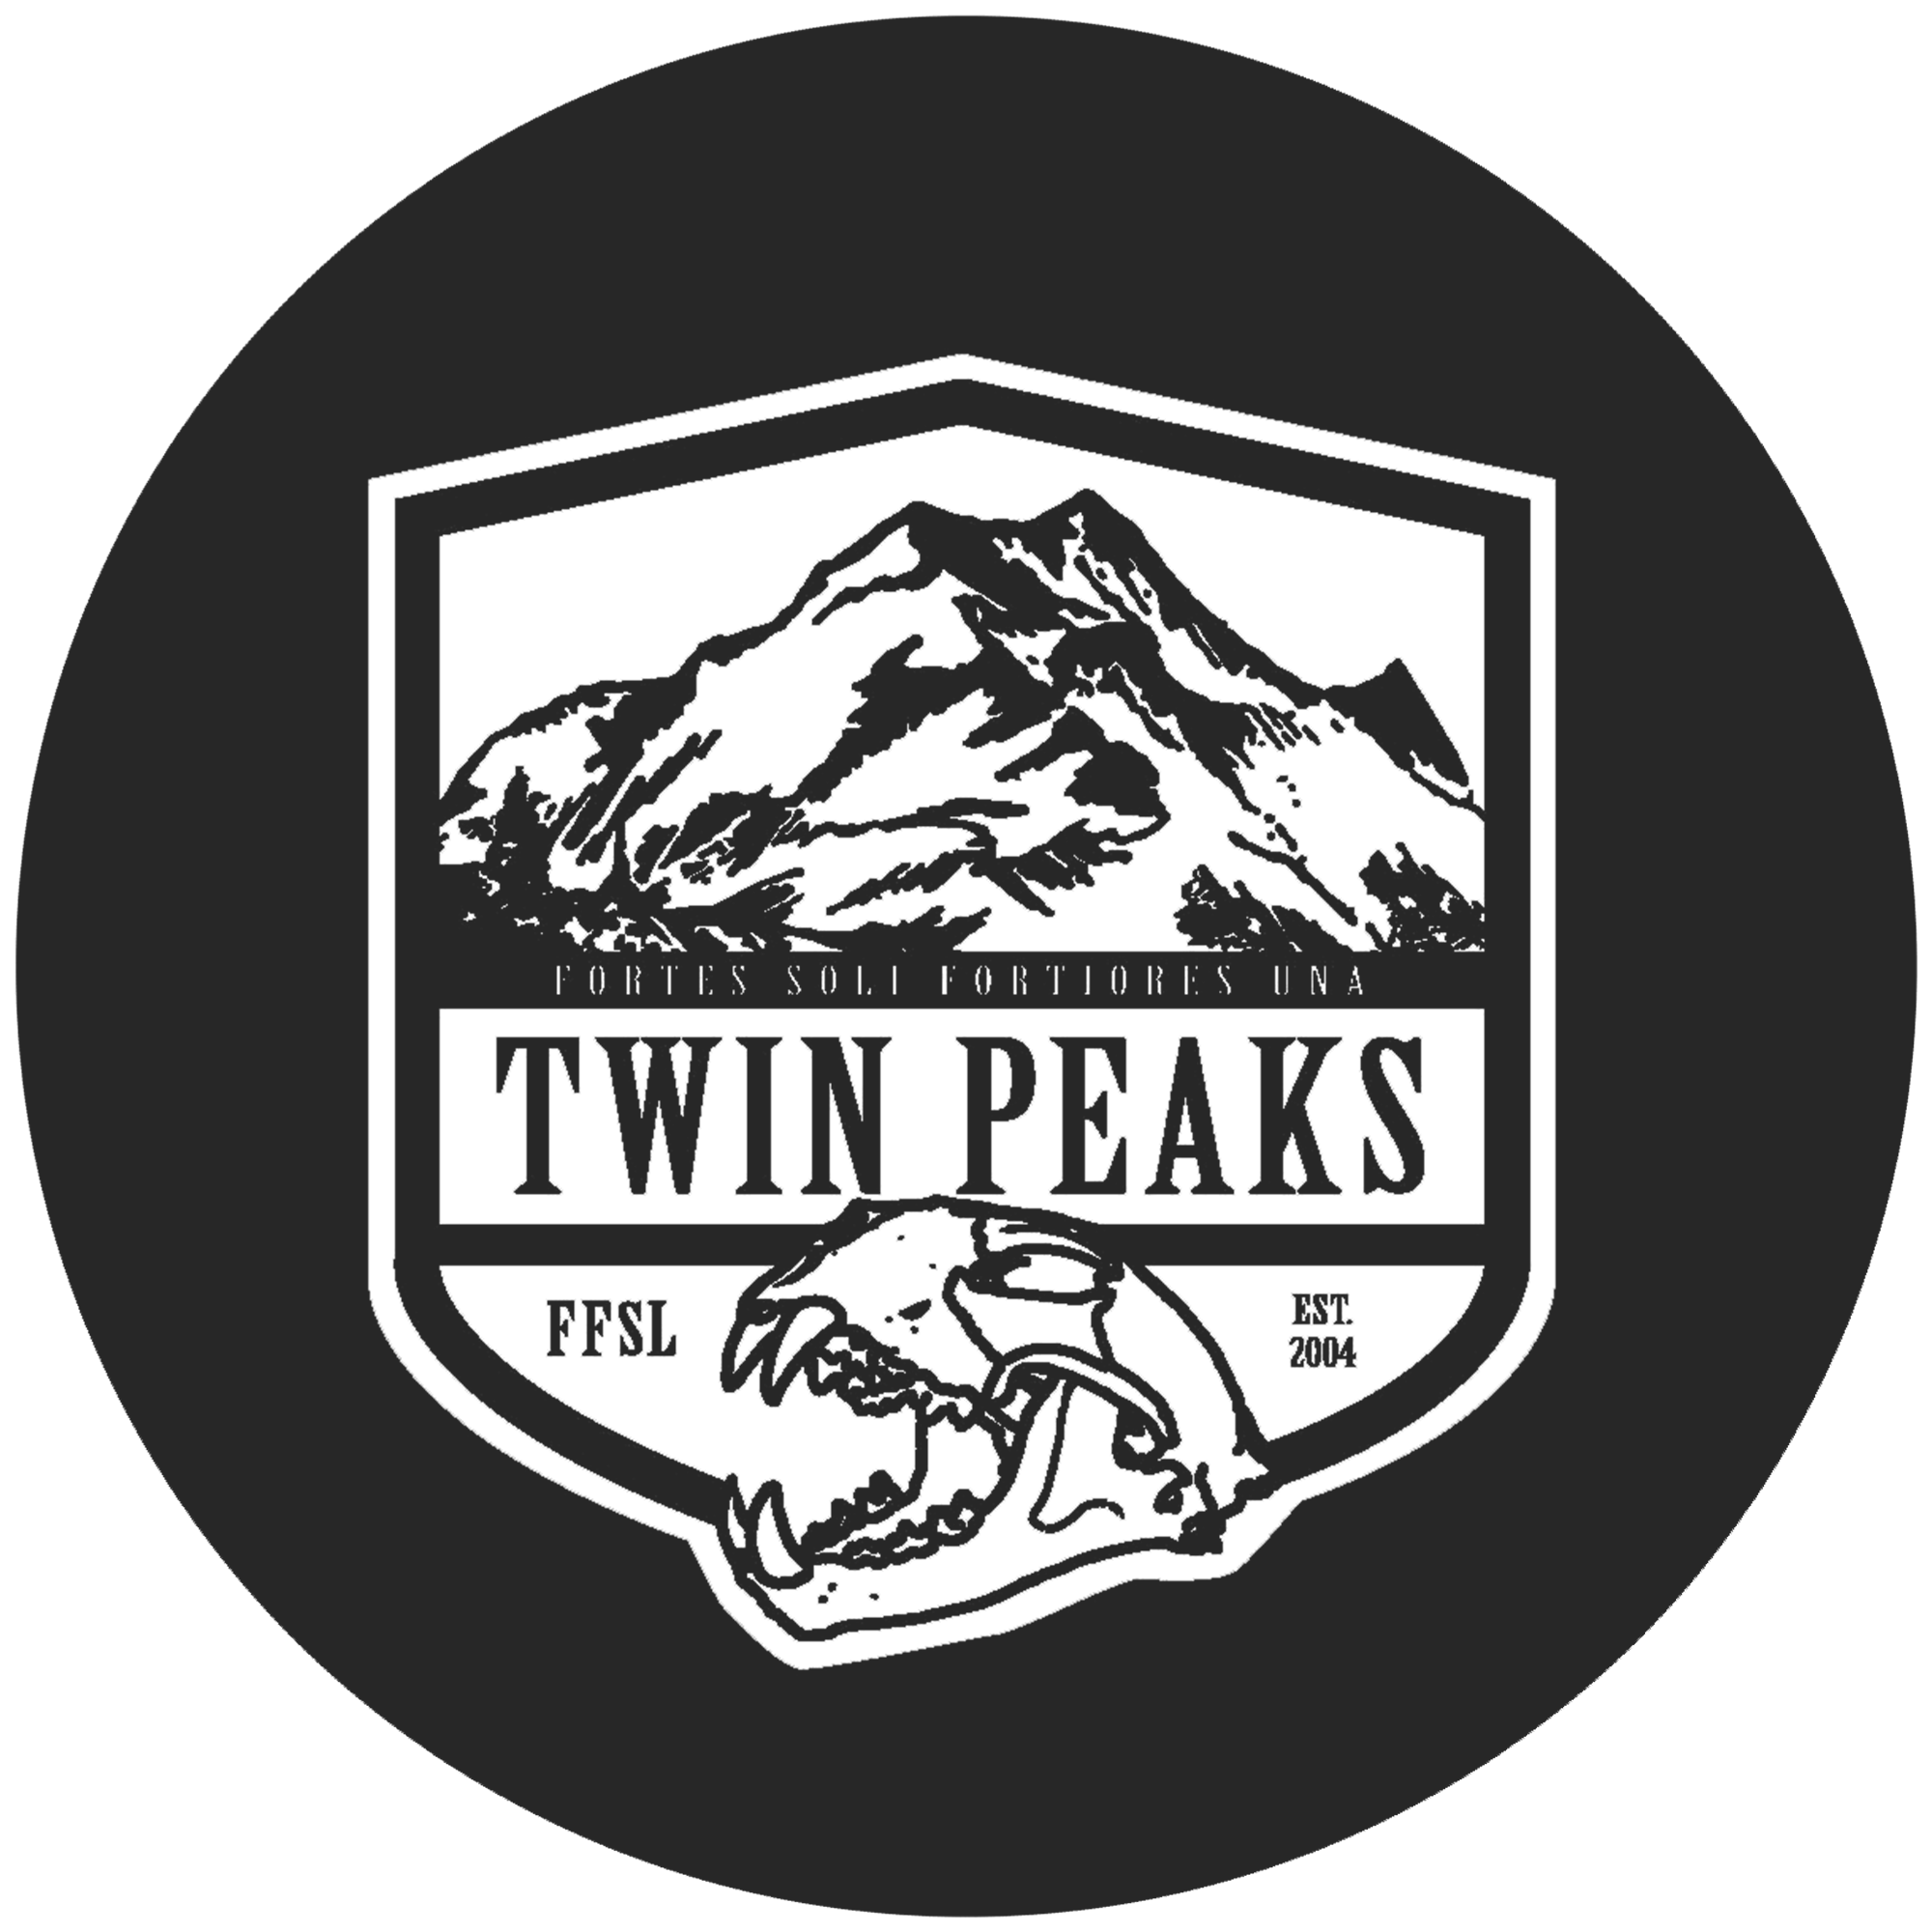 Twin Peaks Logo